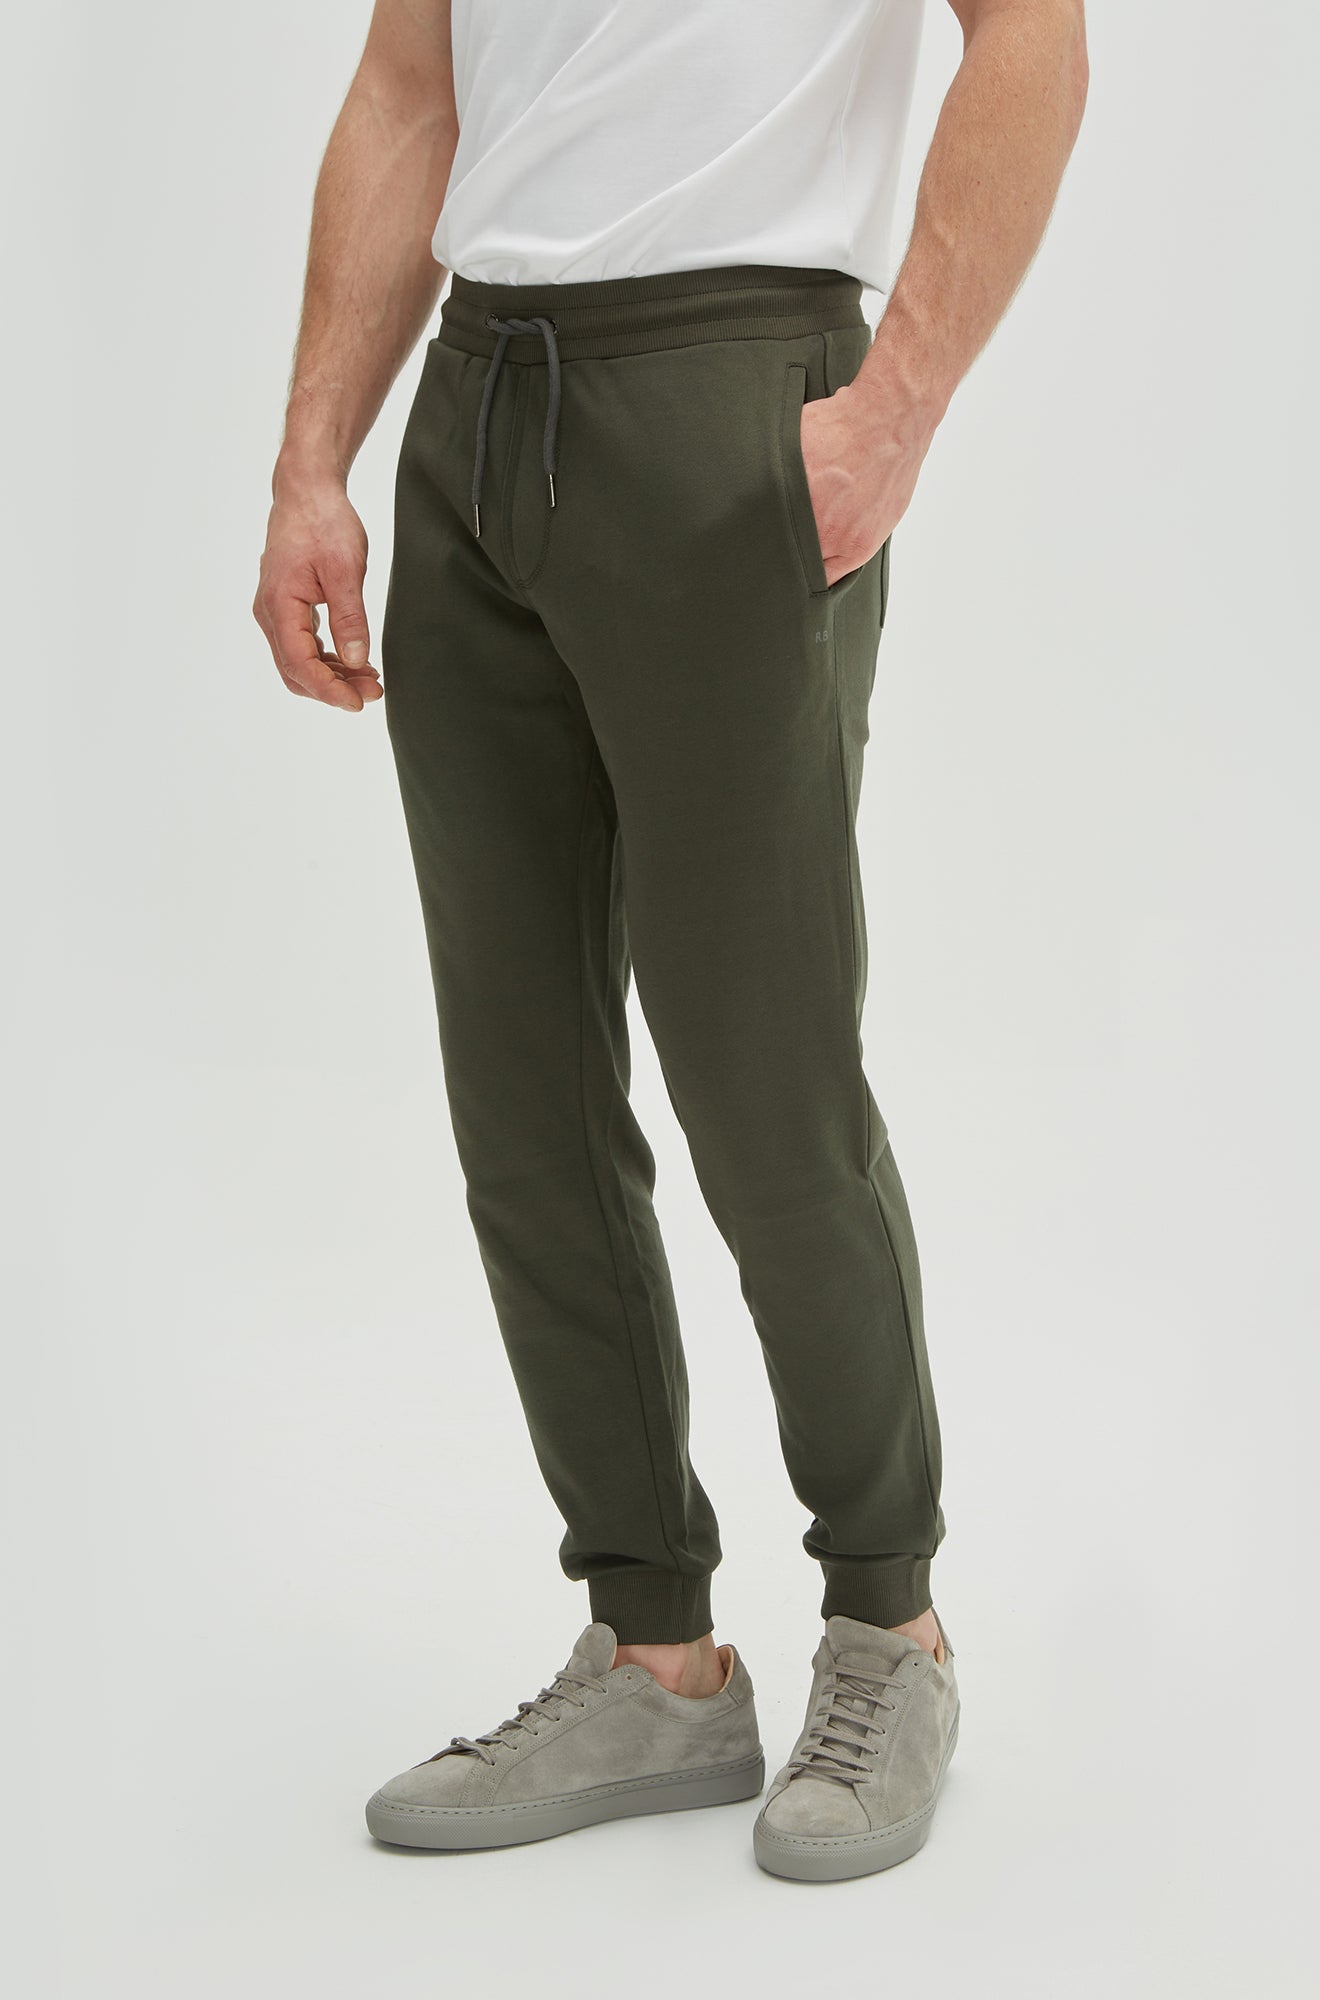 Pantalon pour homme par Robert Barakett | RB01344 Cortina Soldier Green | Machemise.ca, vêtements mode pour hommes